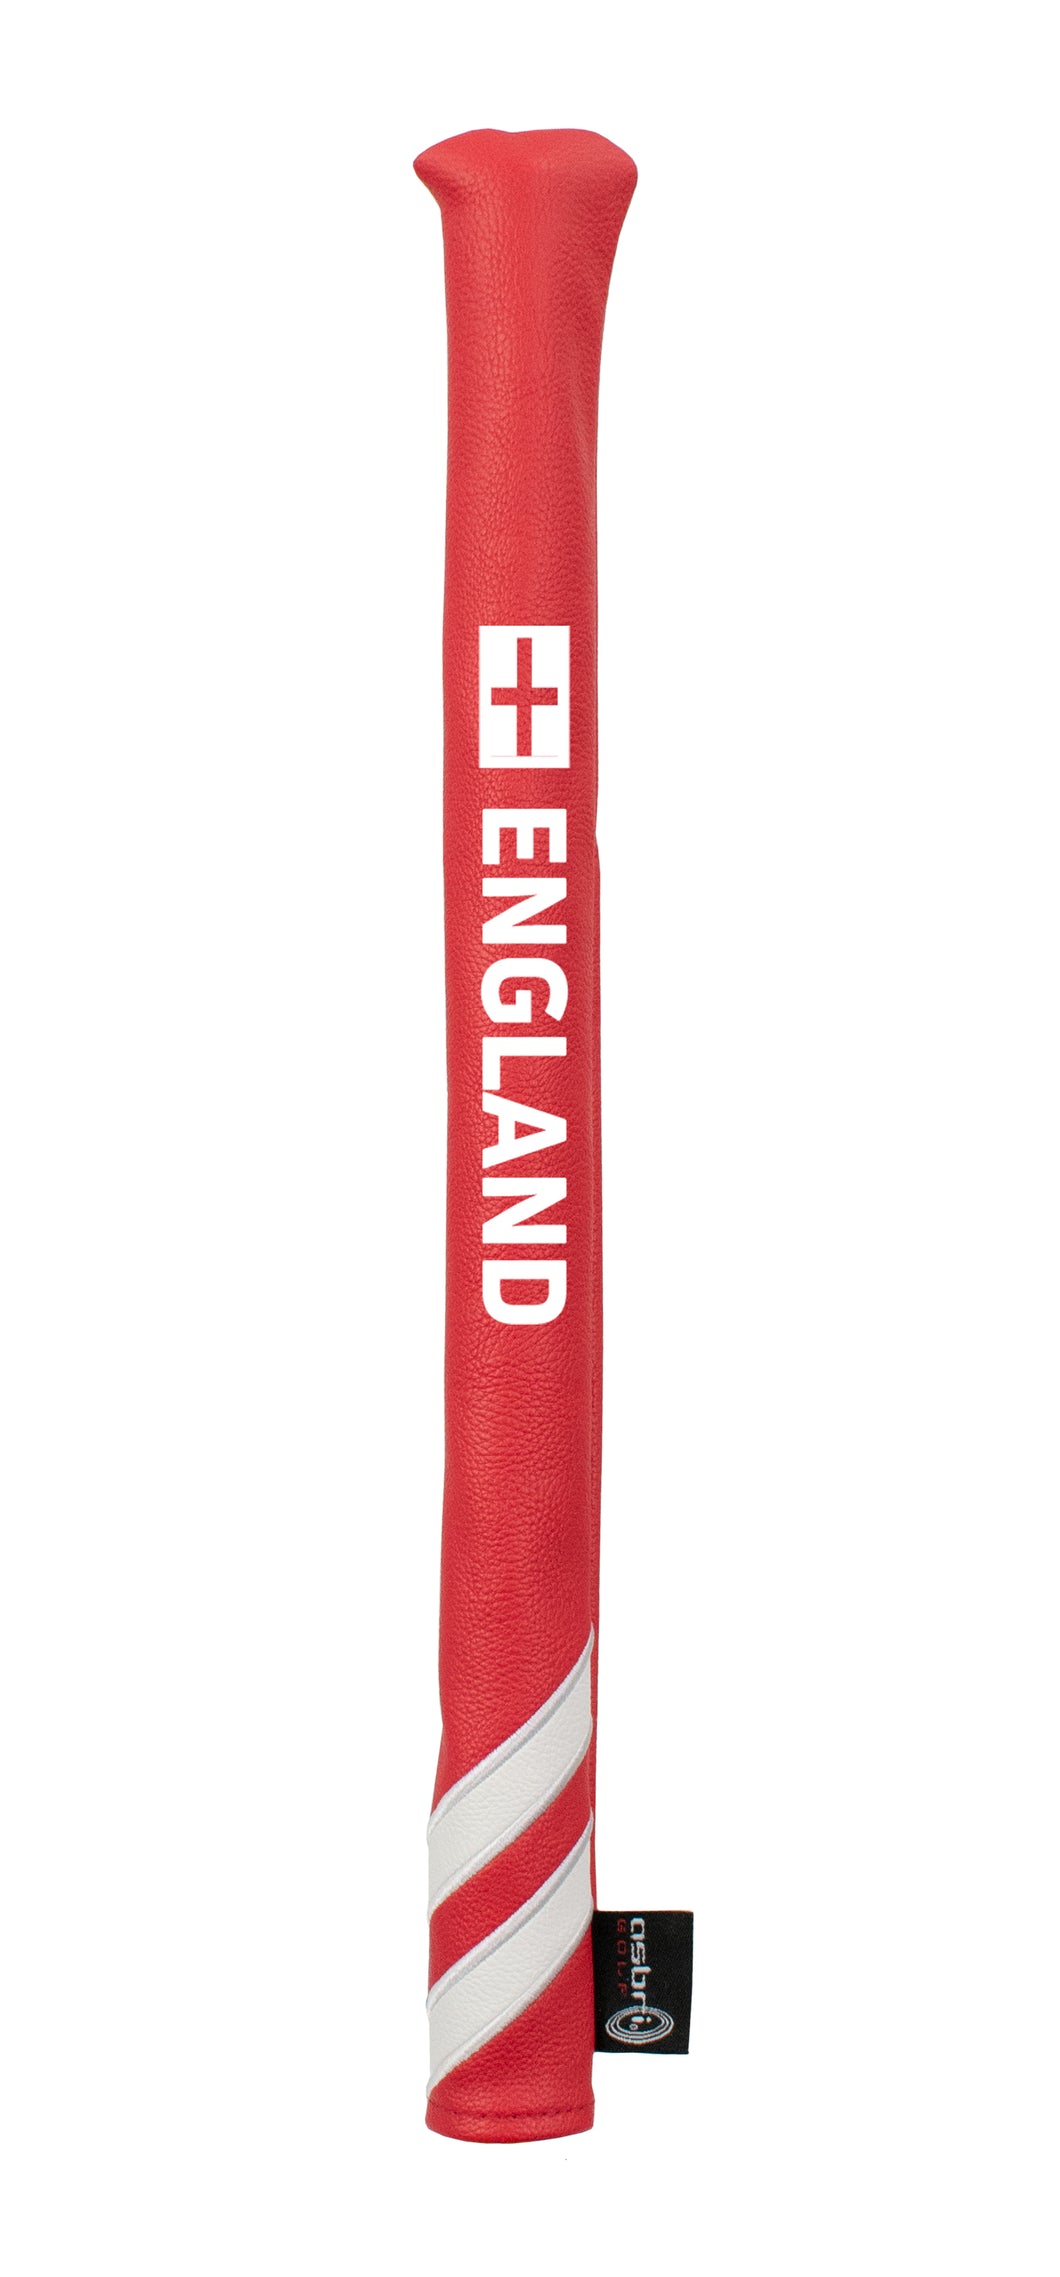 Asbri England Patriot Design Golf Alignment Sticks Cover.